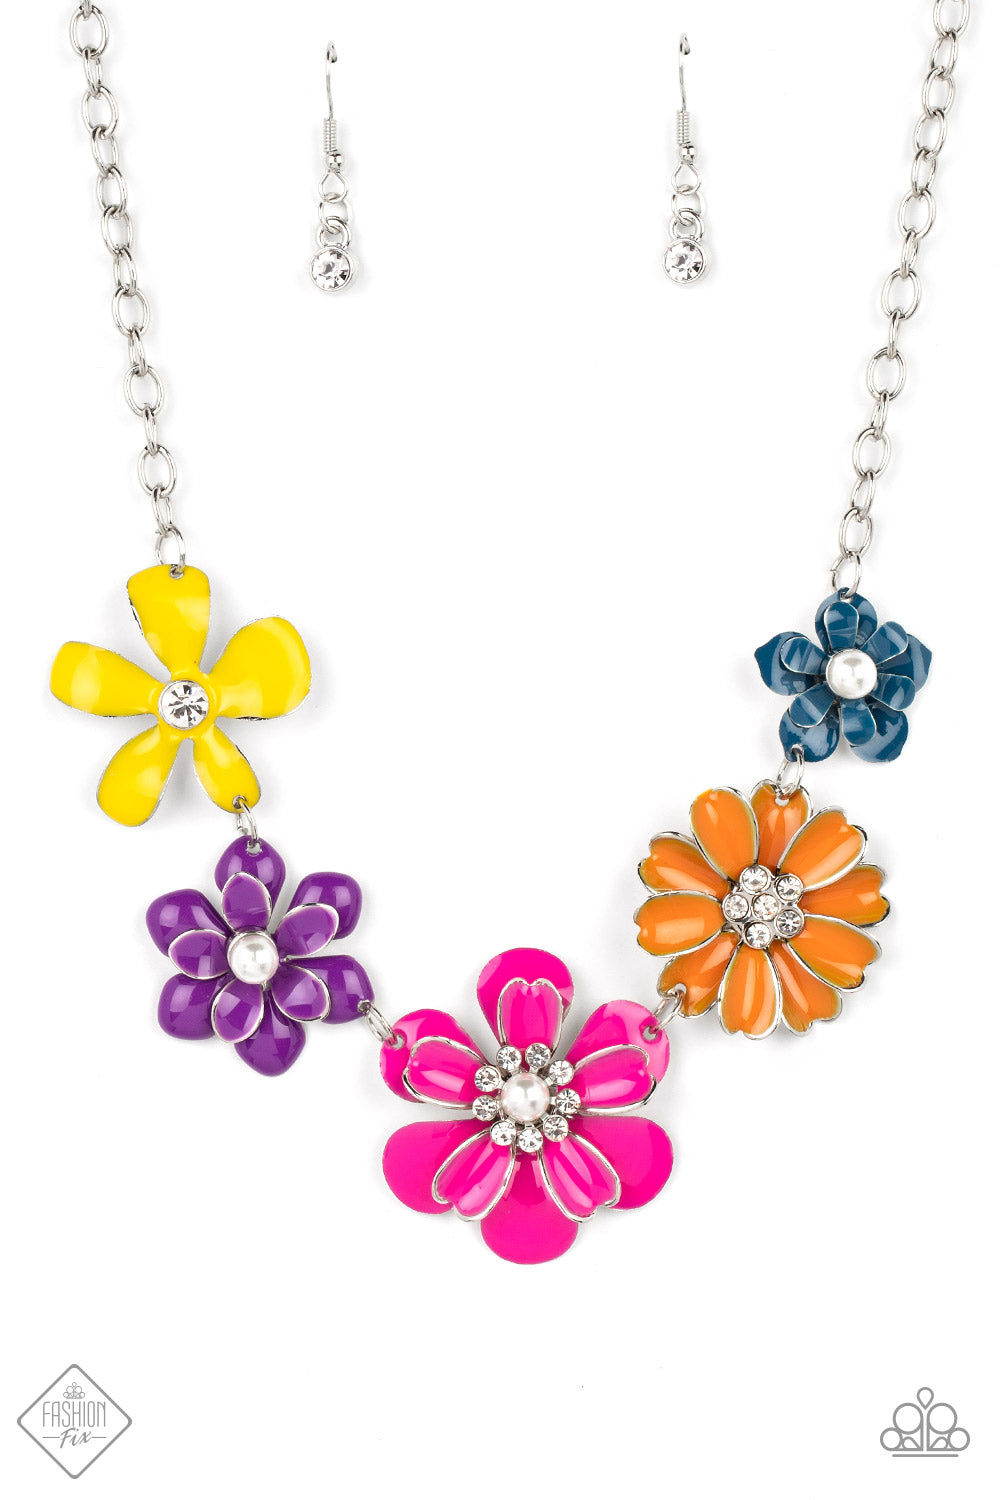 Floral Reverie - Multi Necklace SEPT 2022 FASHION FIX B127